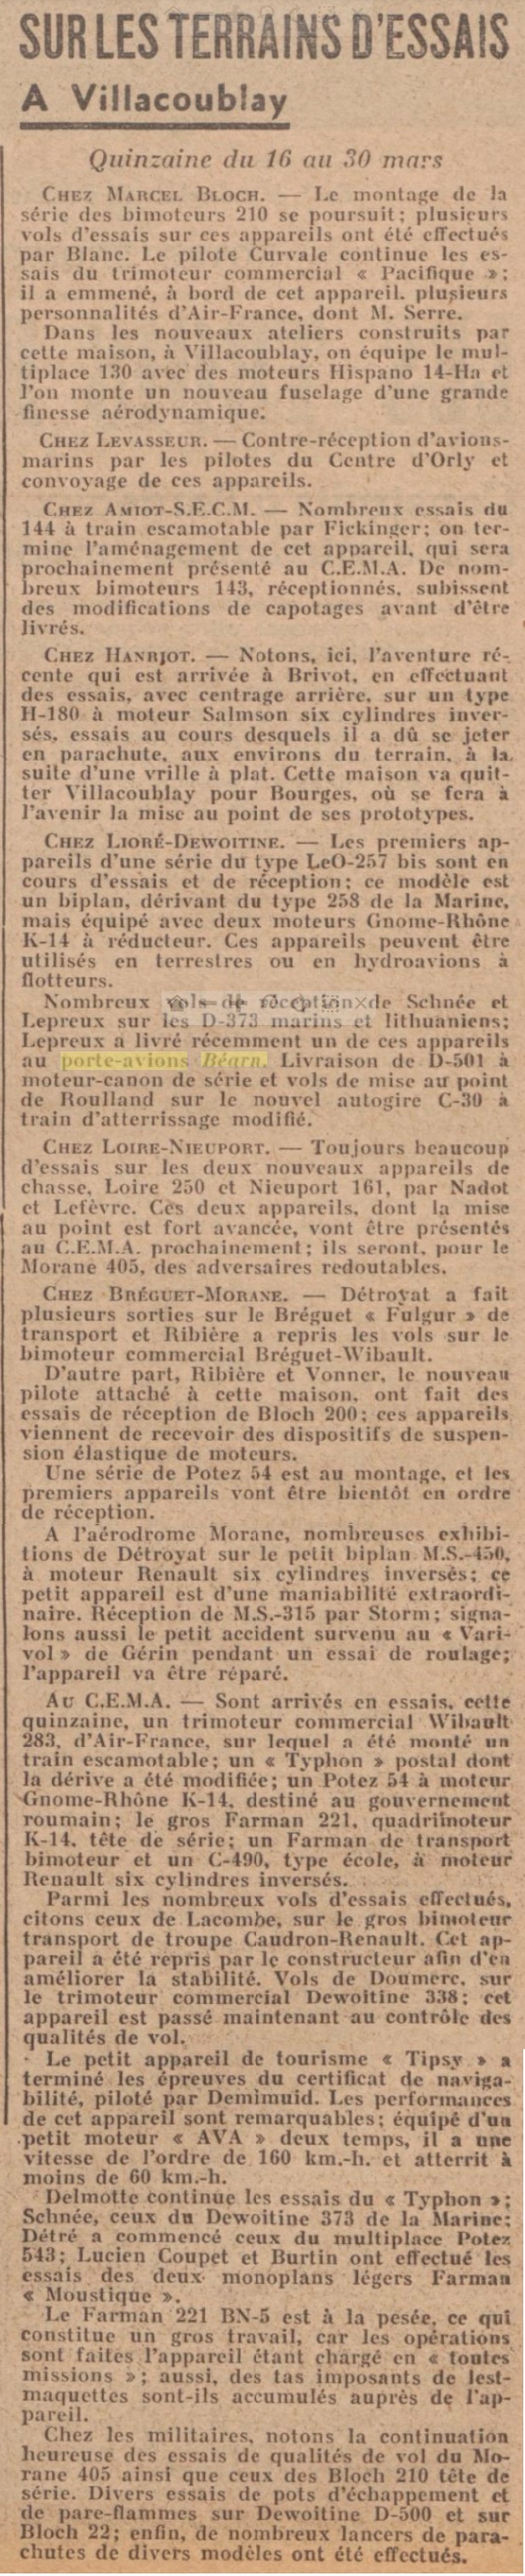  L'actualité du navire Béarn au travers de la presse (années 36 à 39)   19360412